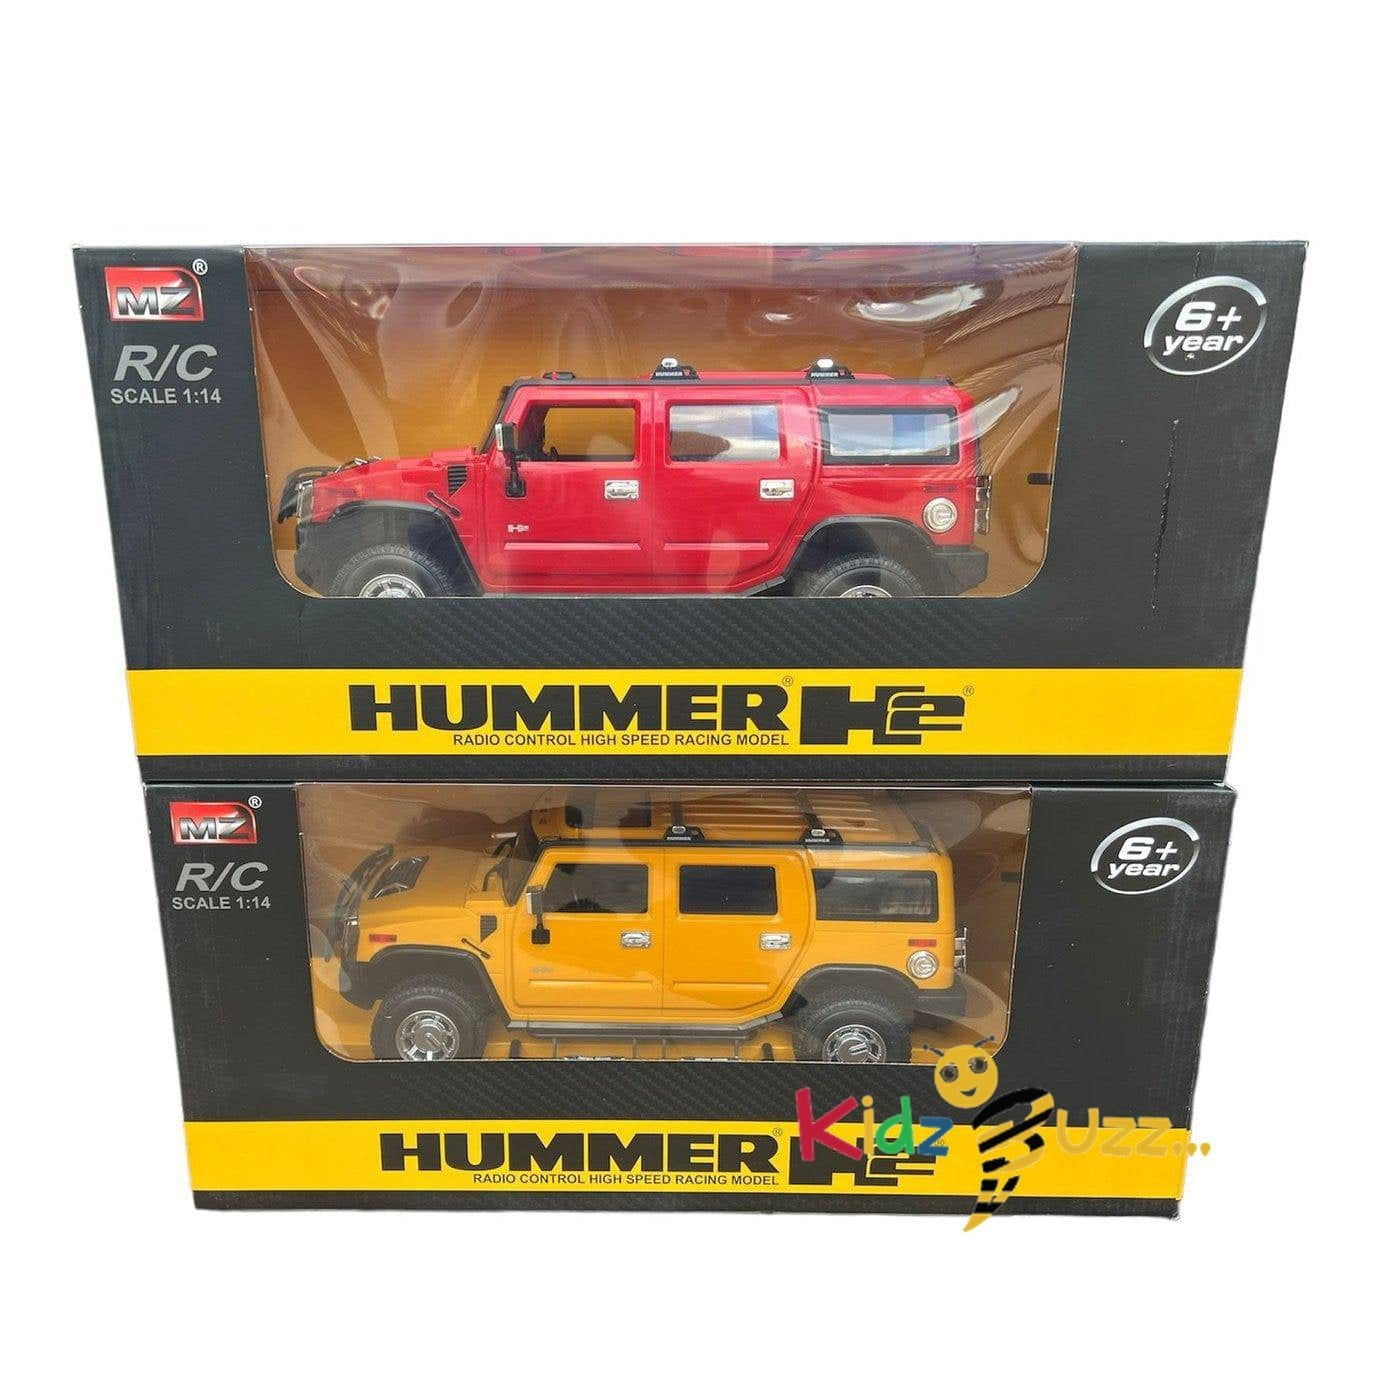 R/C Hummer